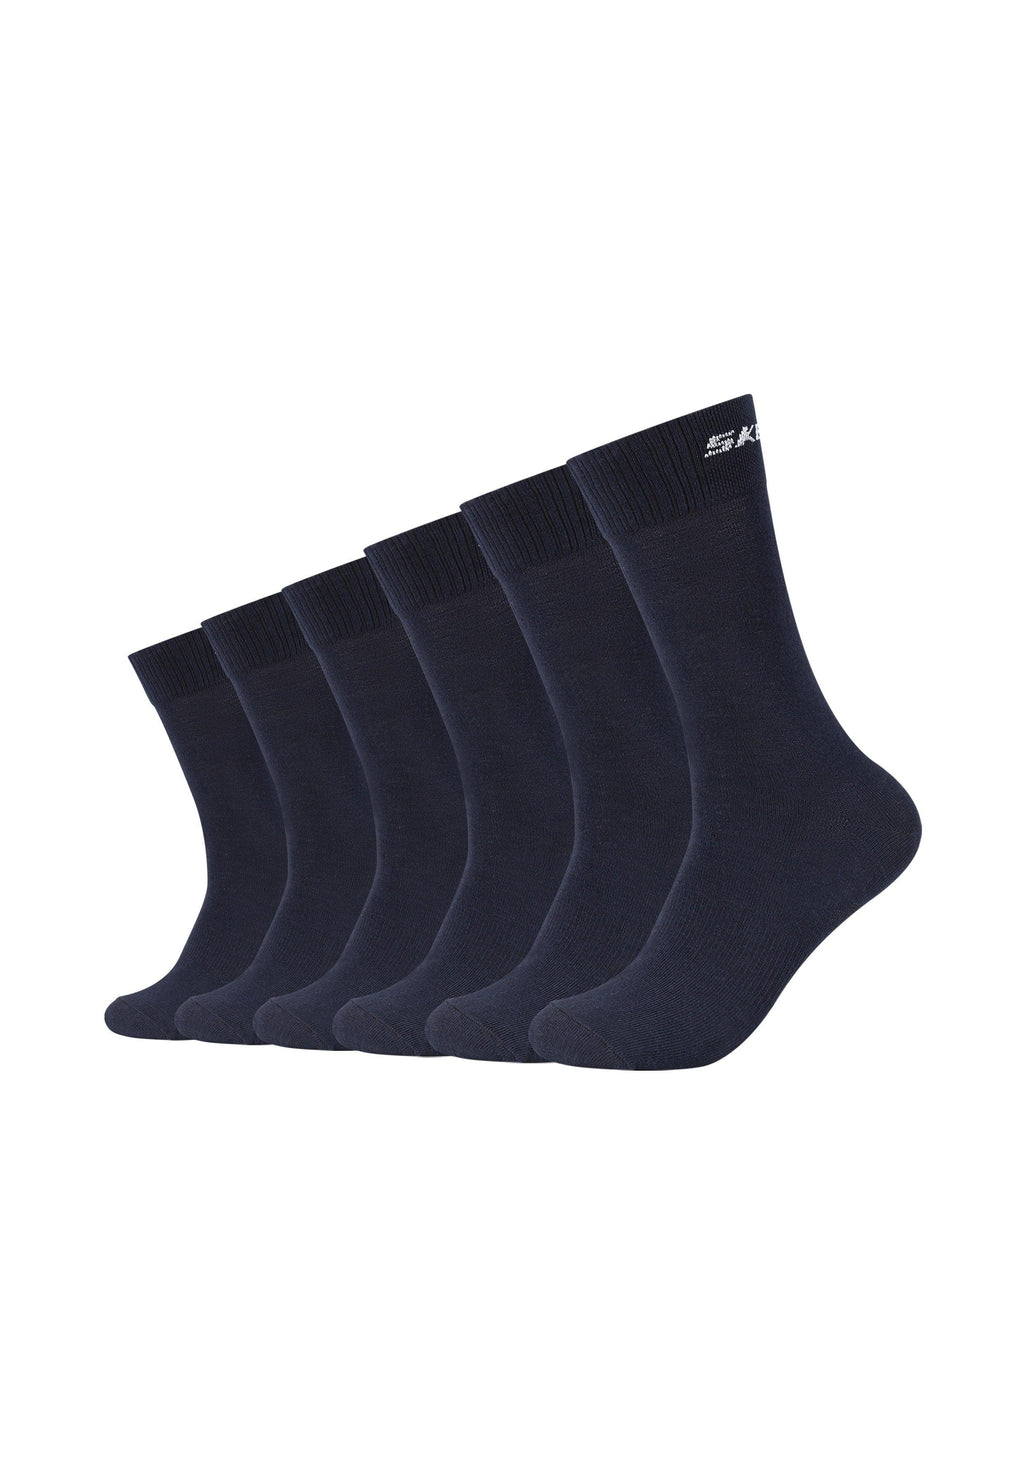 6er ONSKINERY Socken Mesh – Ventilation Pack